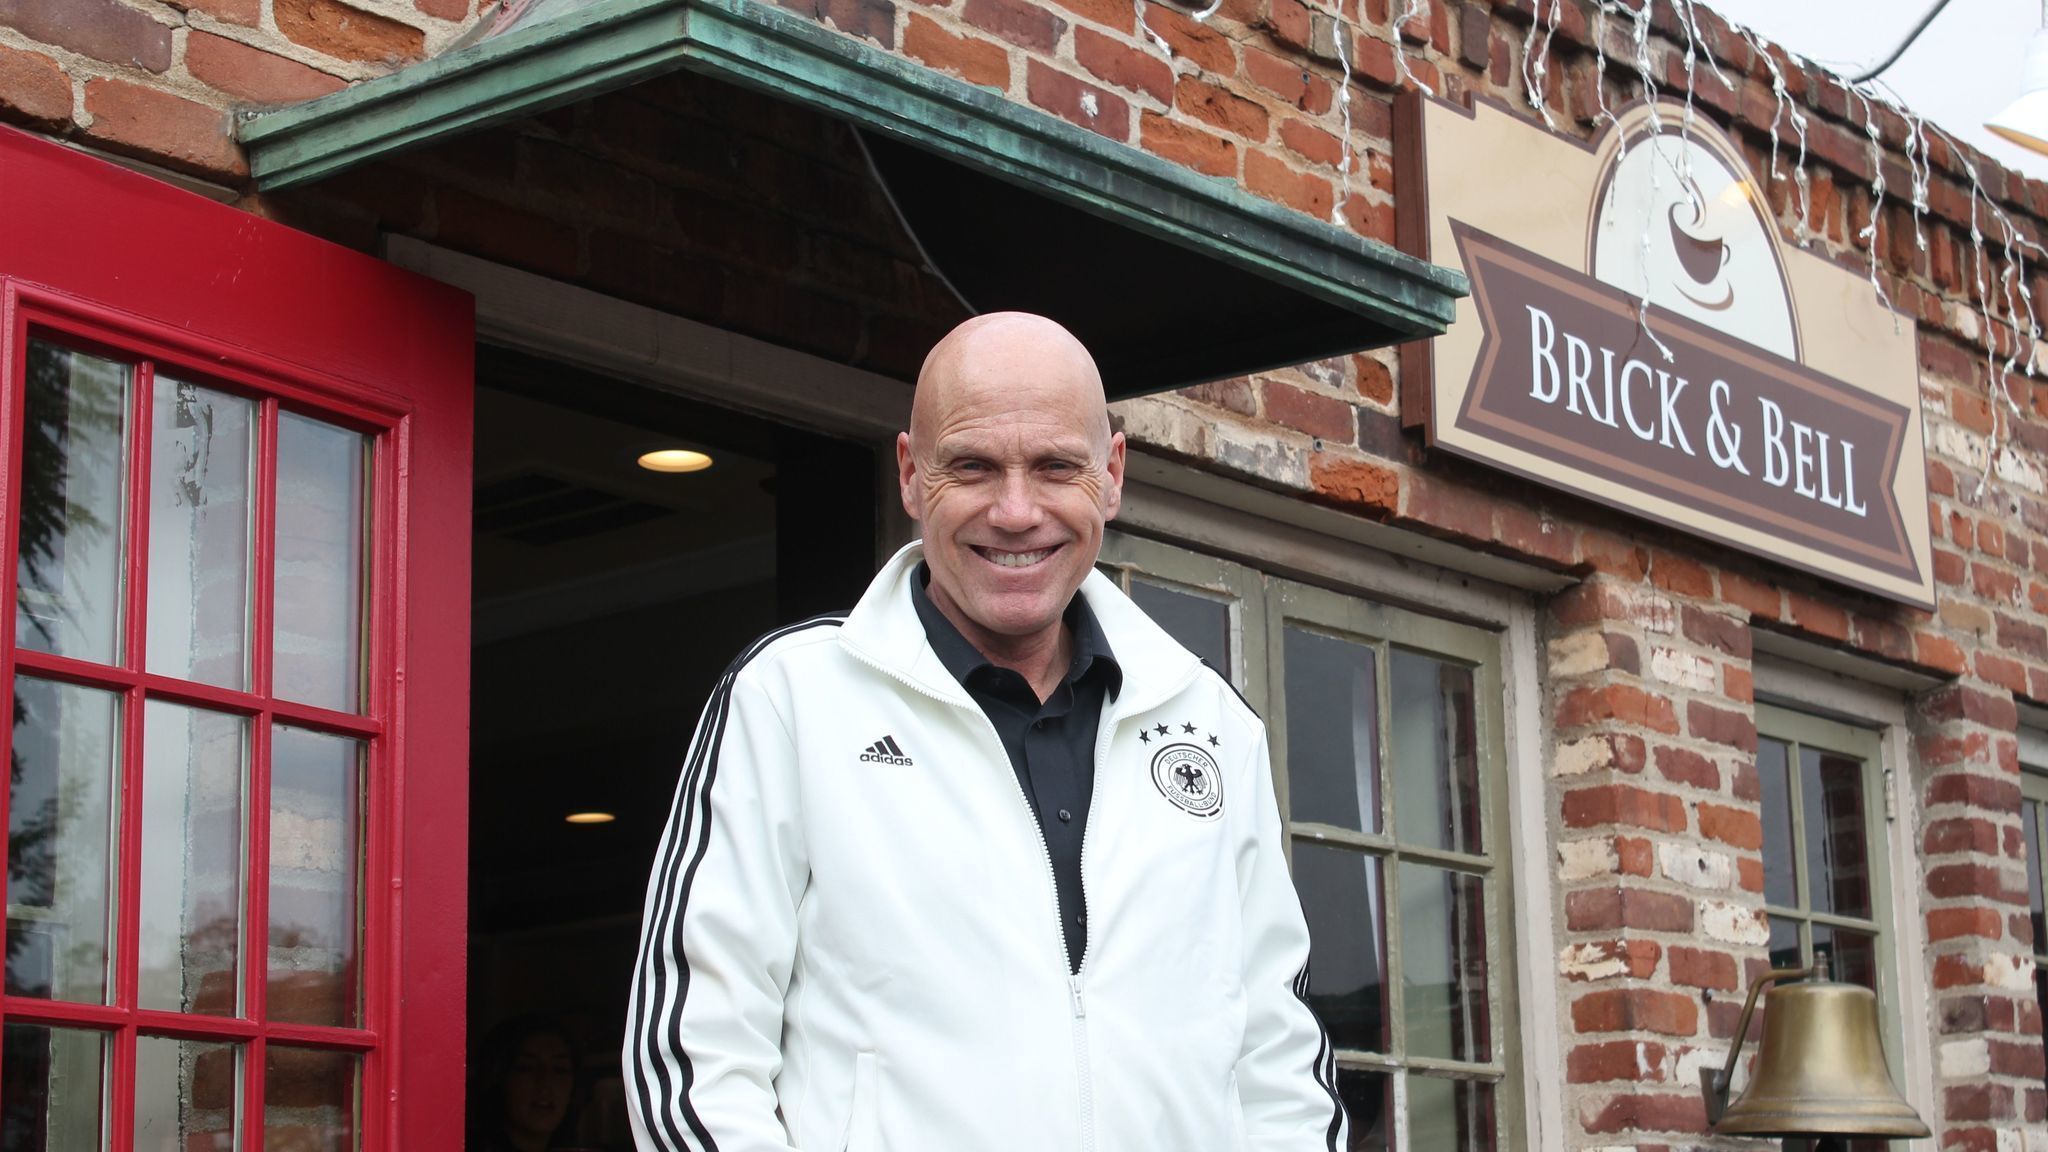 People in Your Neighborhood: Meet Brick & Bell Café owner Peter Schumacher - La Jolla Light